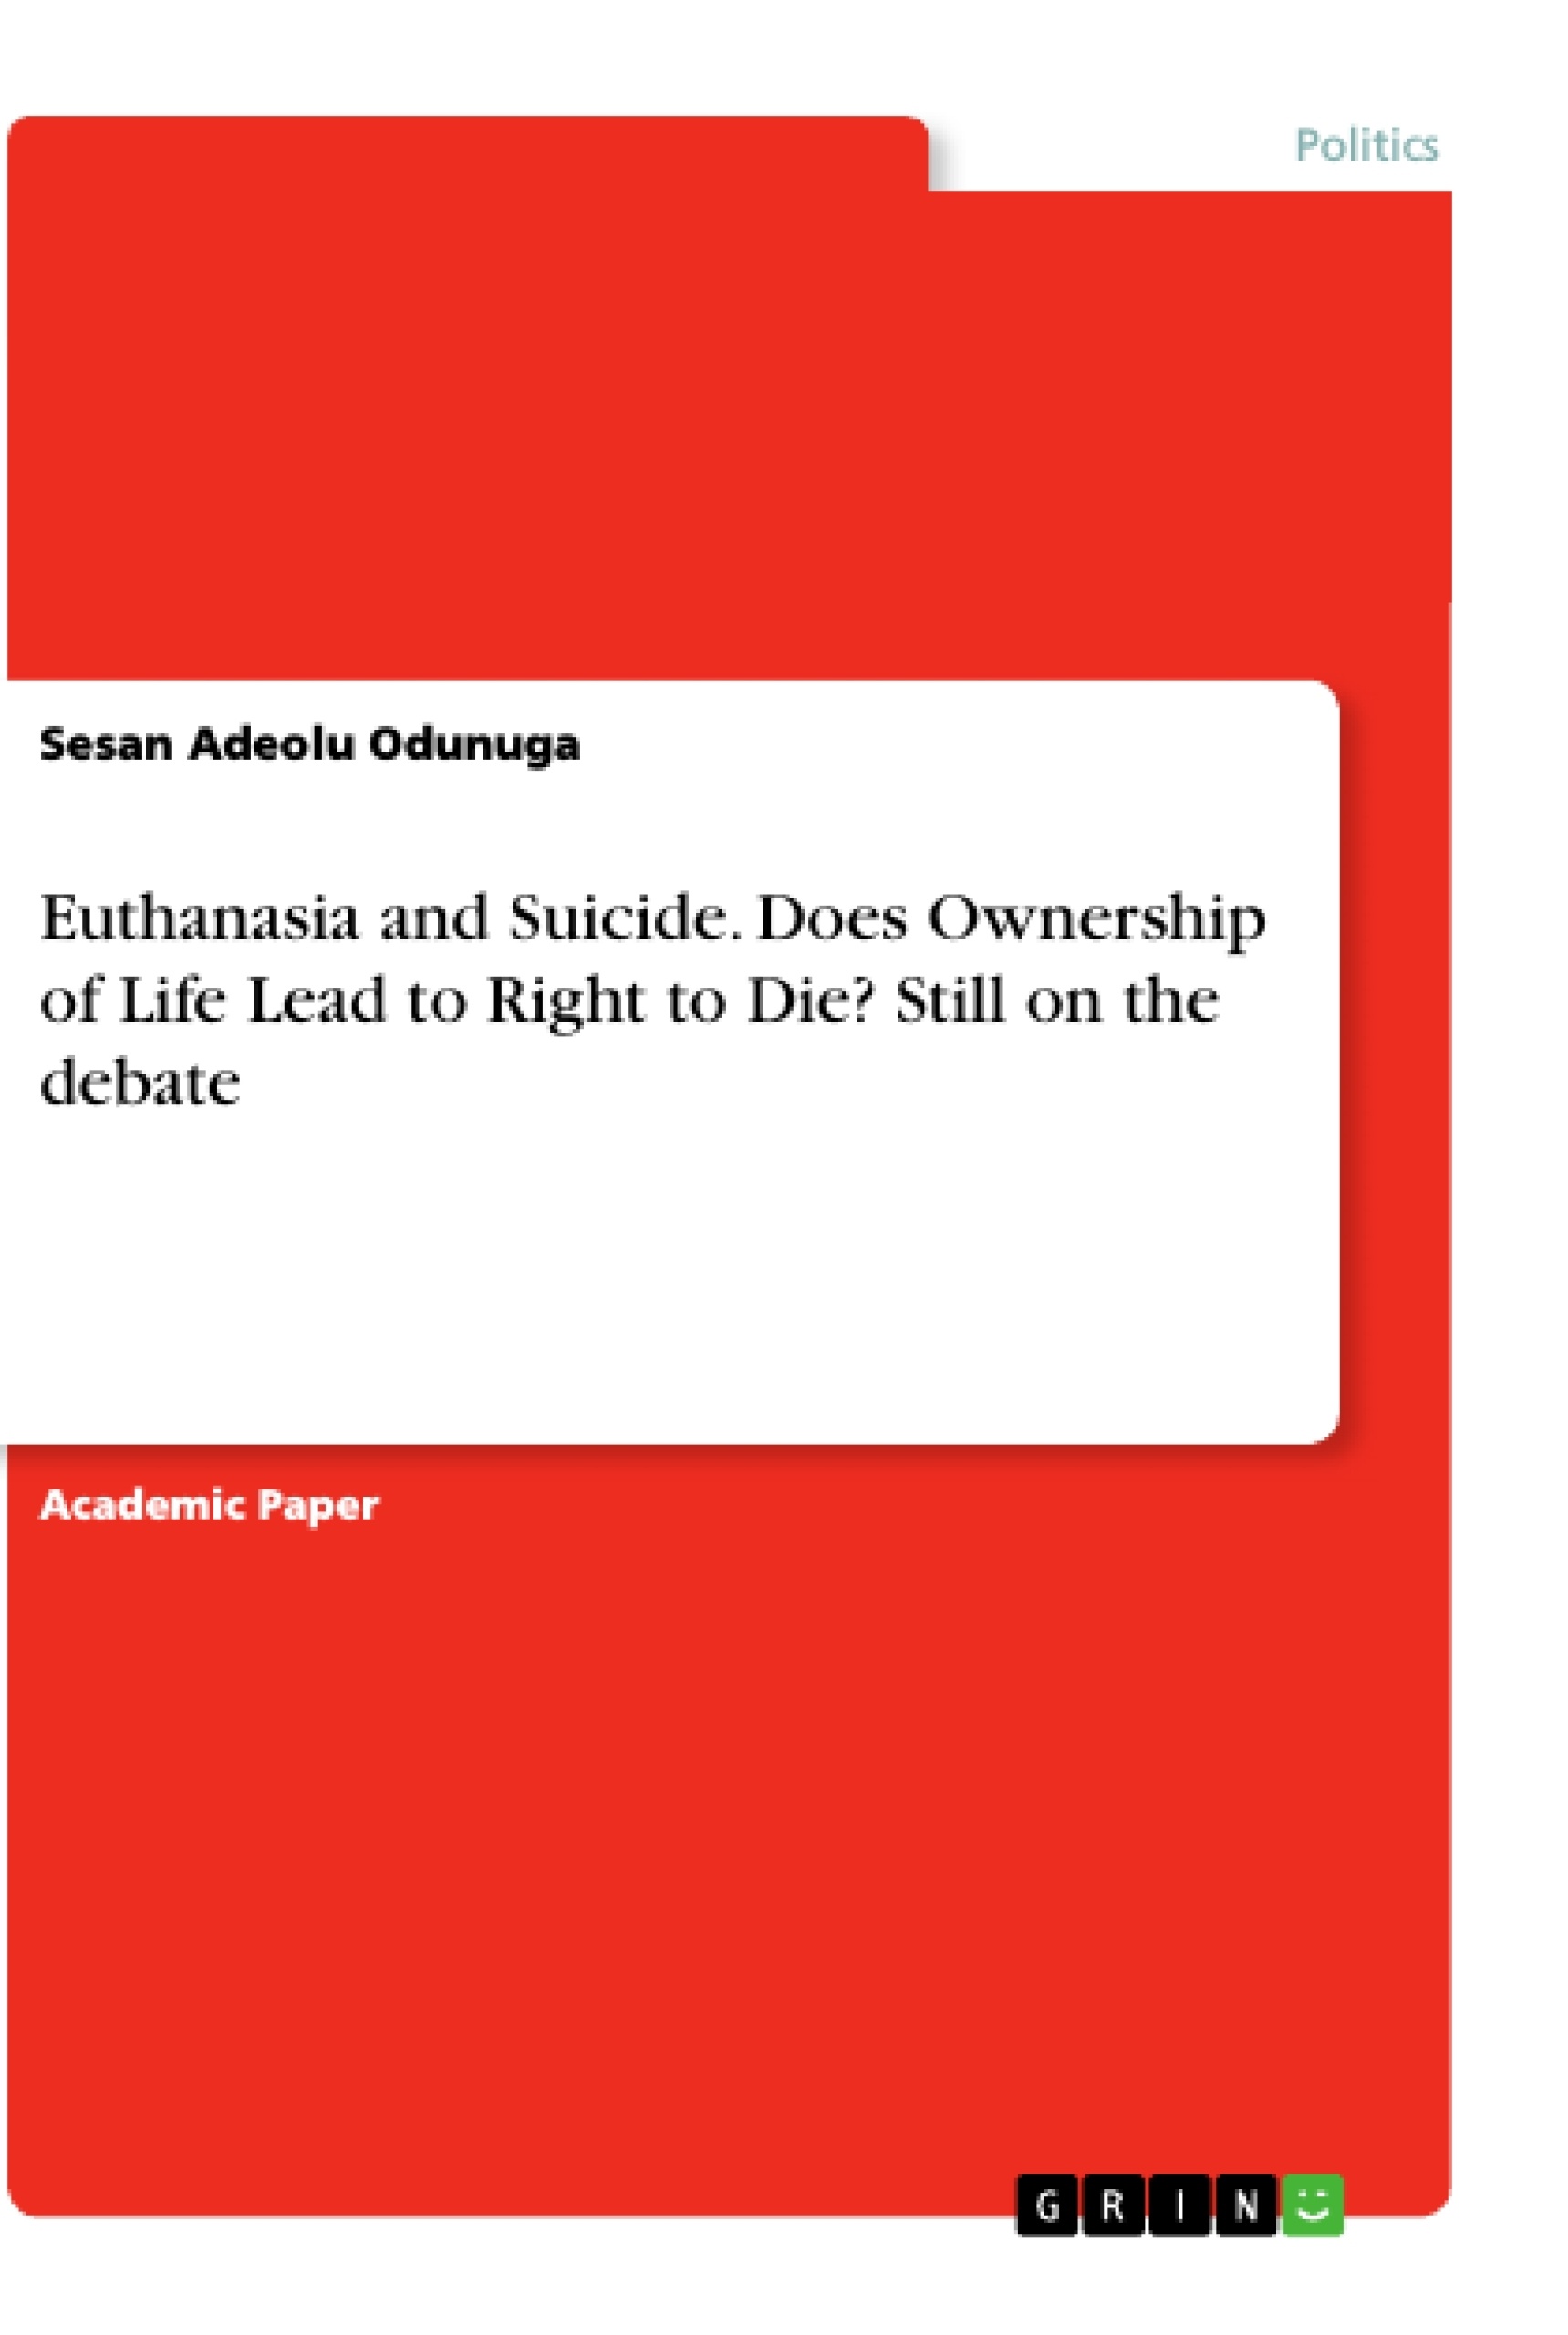 euthanasia paper